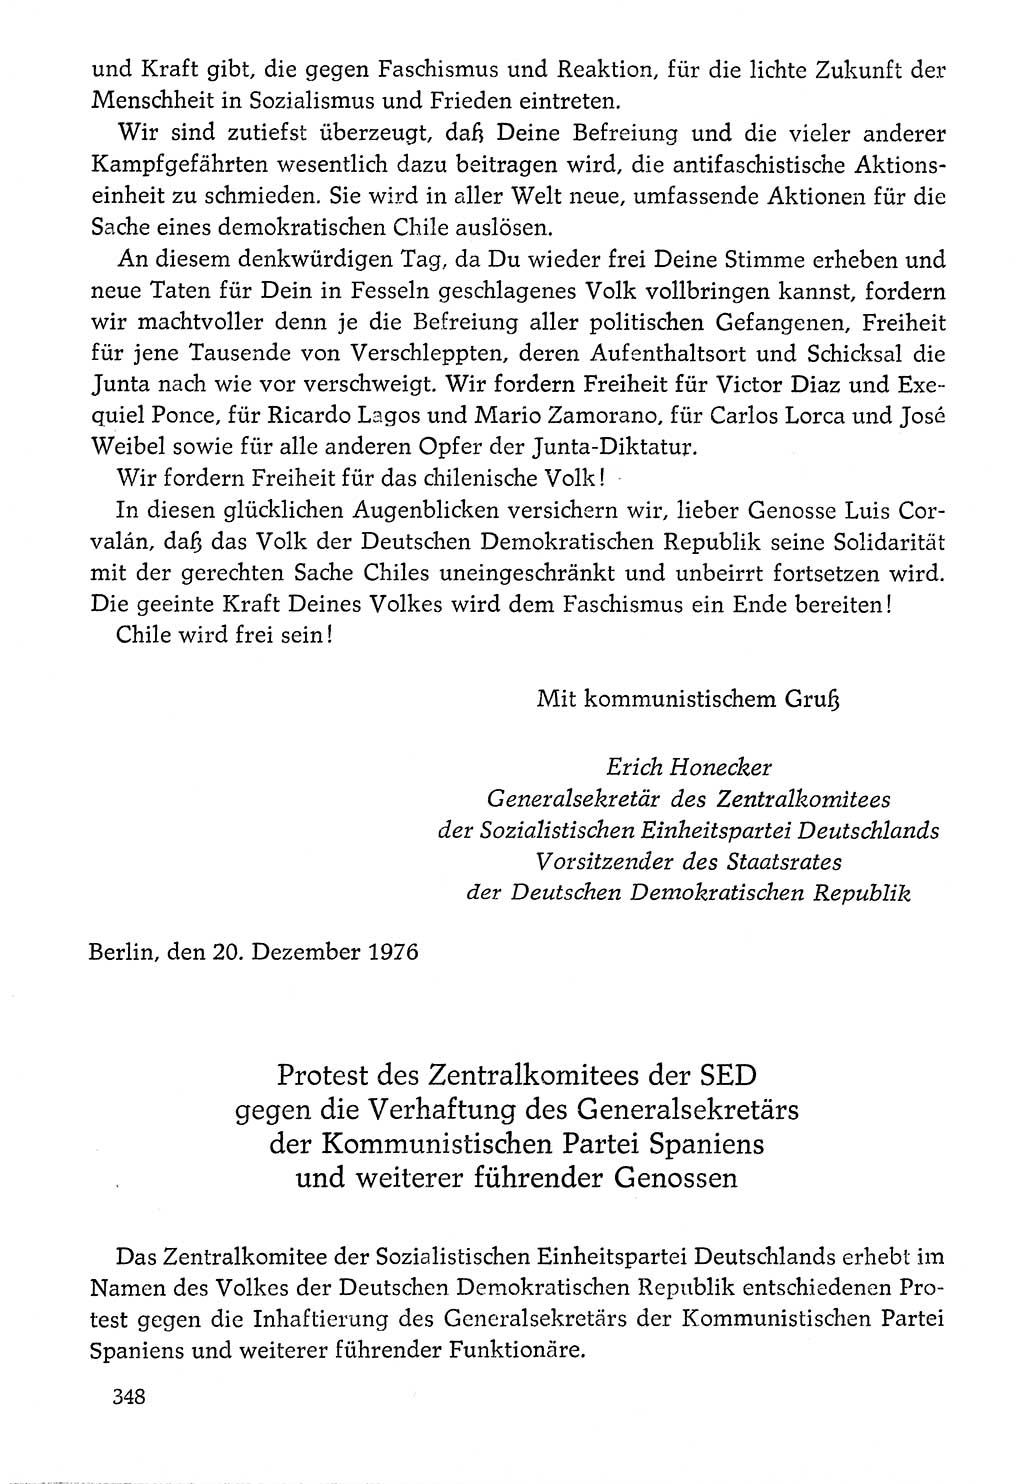 Dokumente der Sozialistischen Einheitspartei Deutschlands (SED) [Deutsche Demokratische Republik (DDR)] 1976-1977, Seite 348 (Dok. SED DDR 1976-1977, S. 348)